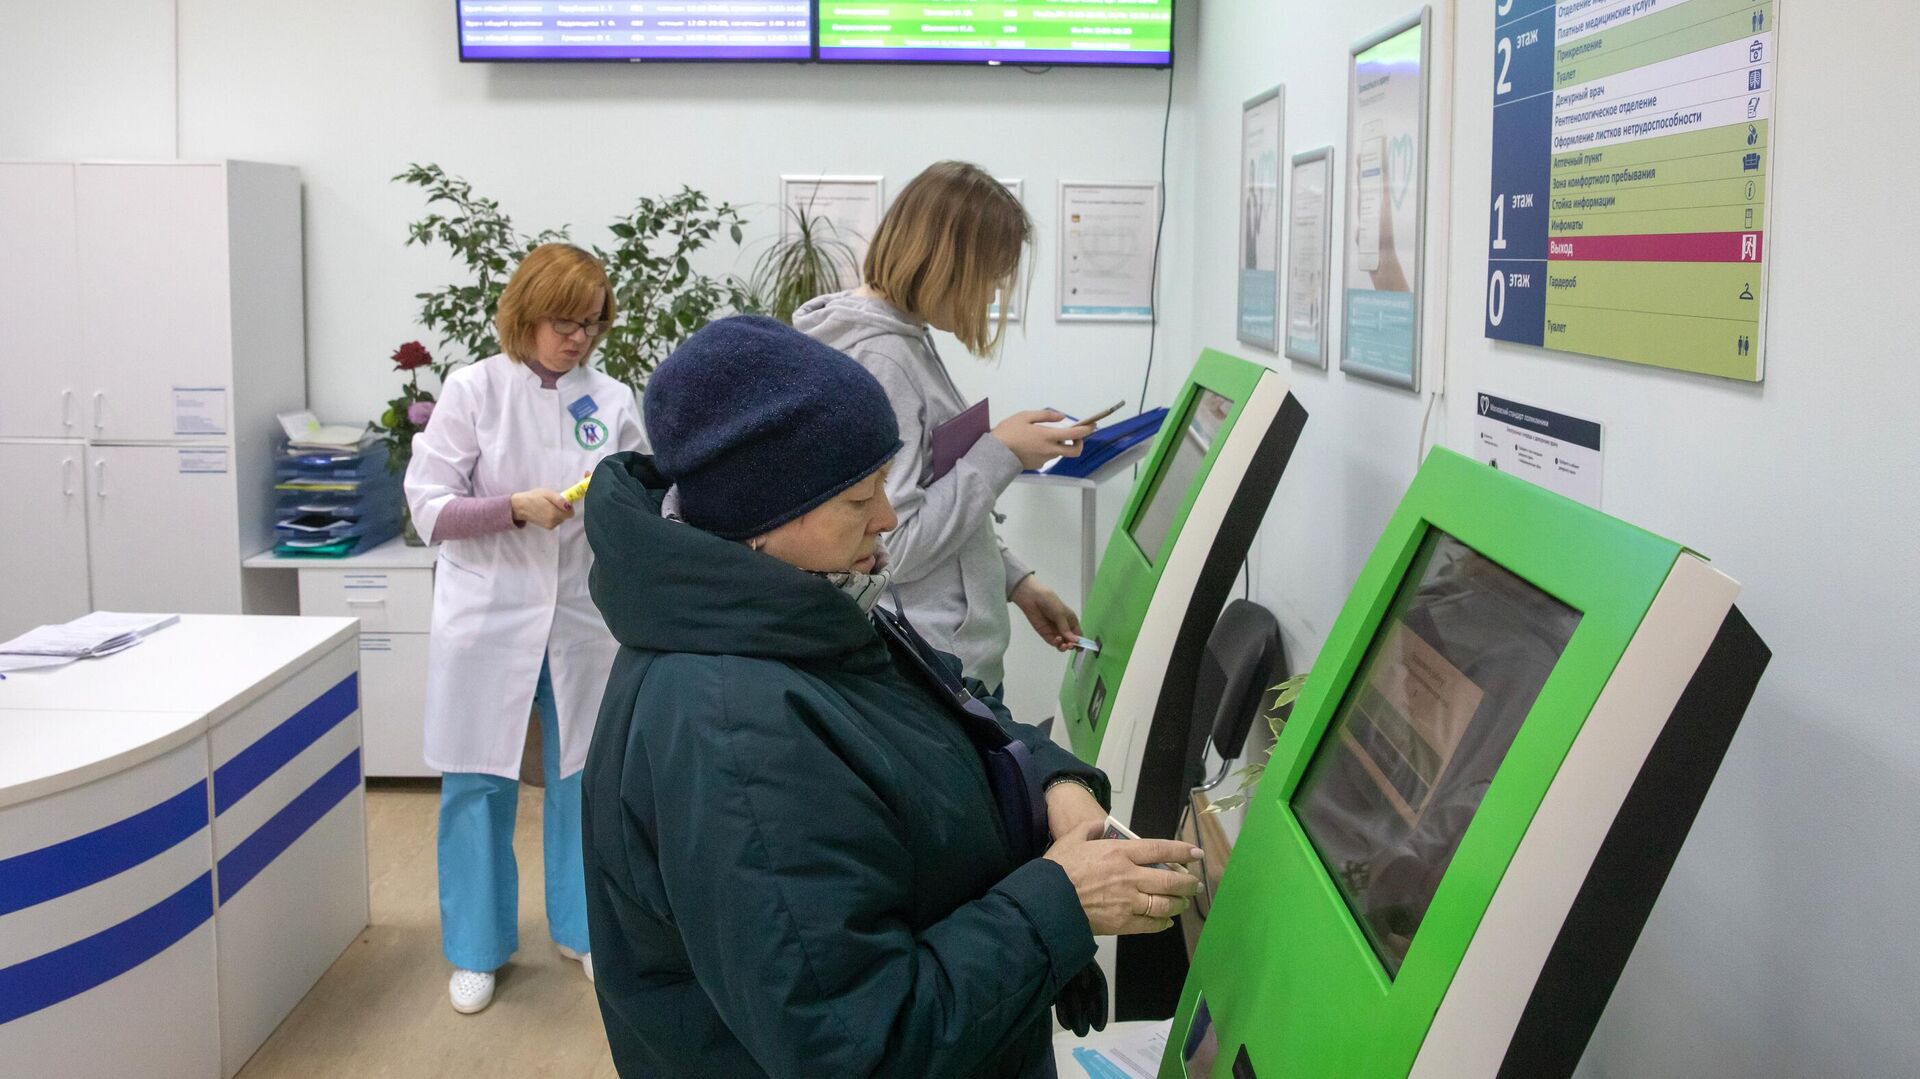  Пациенты записываются на прием к врачу через электронные терминалы в Москве   - РИА Новости, 1920, 01.02.2021